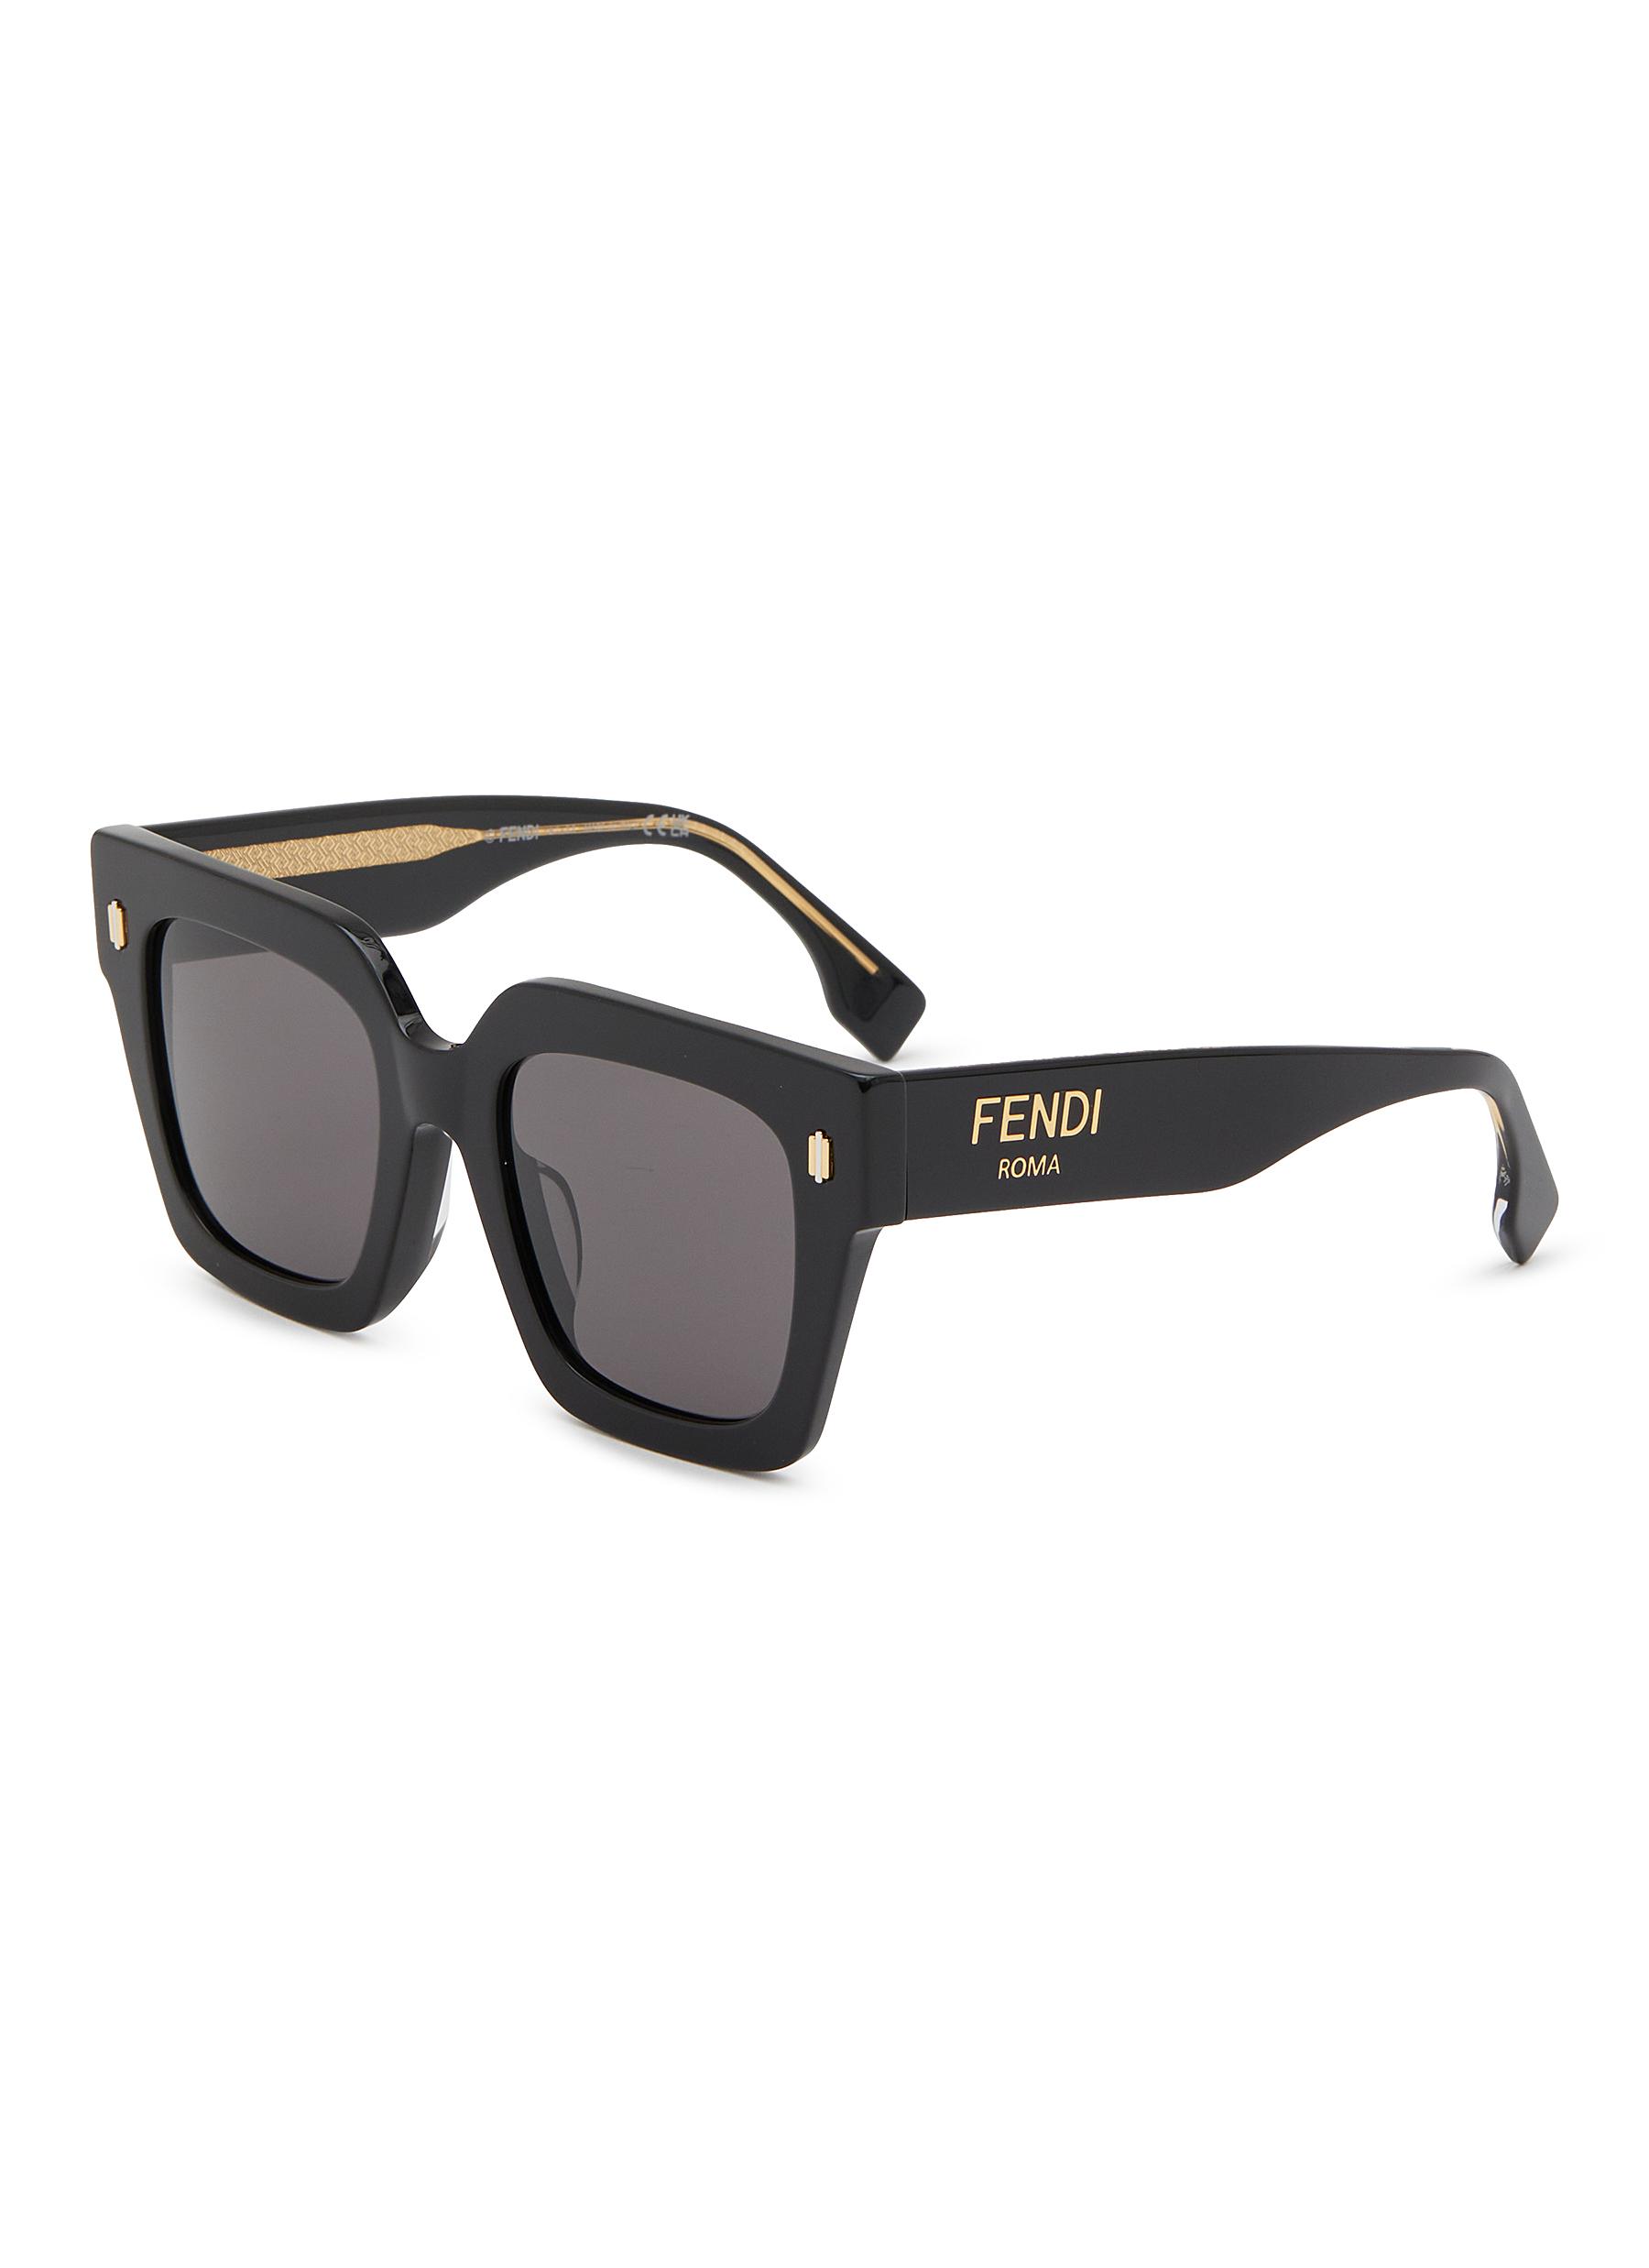 Fendi  Sunglasses women designer, Fashion, Sunglasses